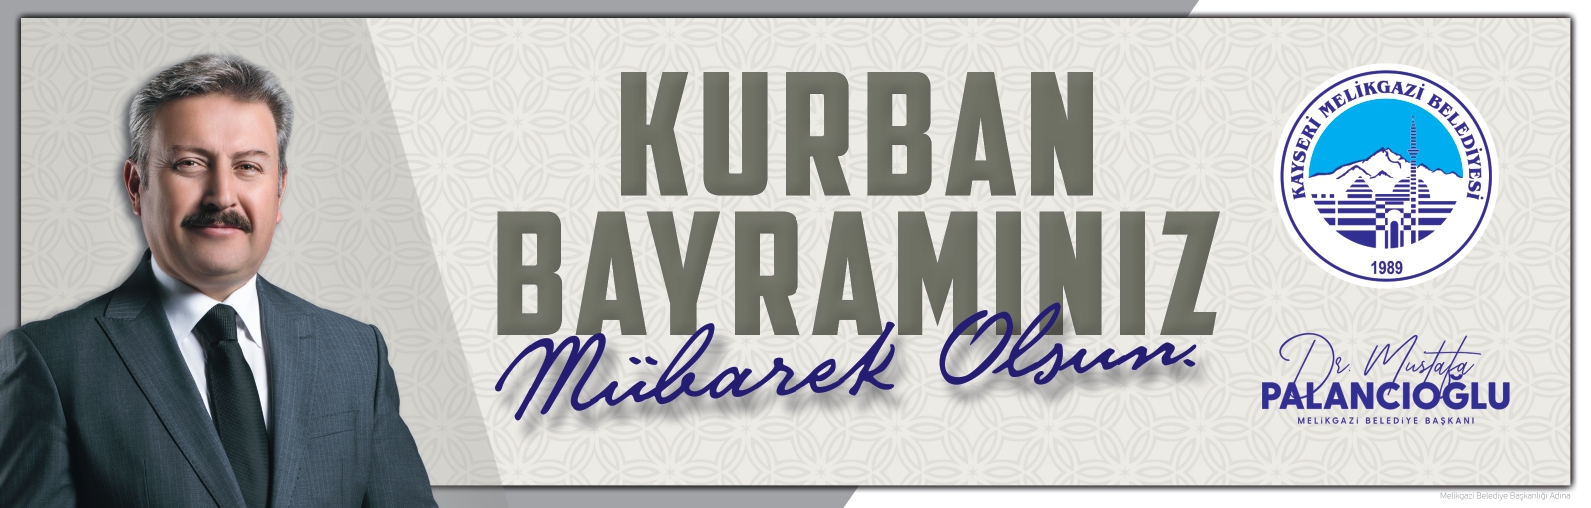 Melikgazi Belediye Başkanı Mustafa Palancıoğlu Bayram Tebrik Mesajı